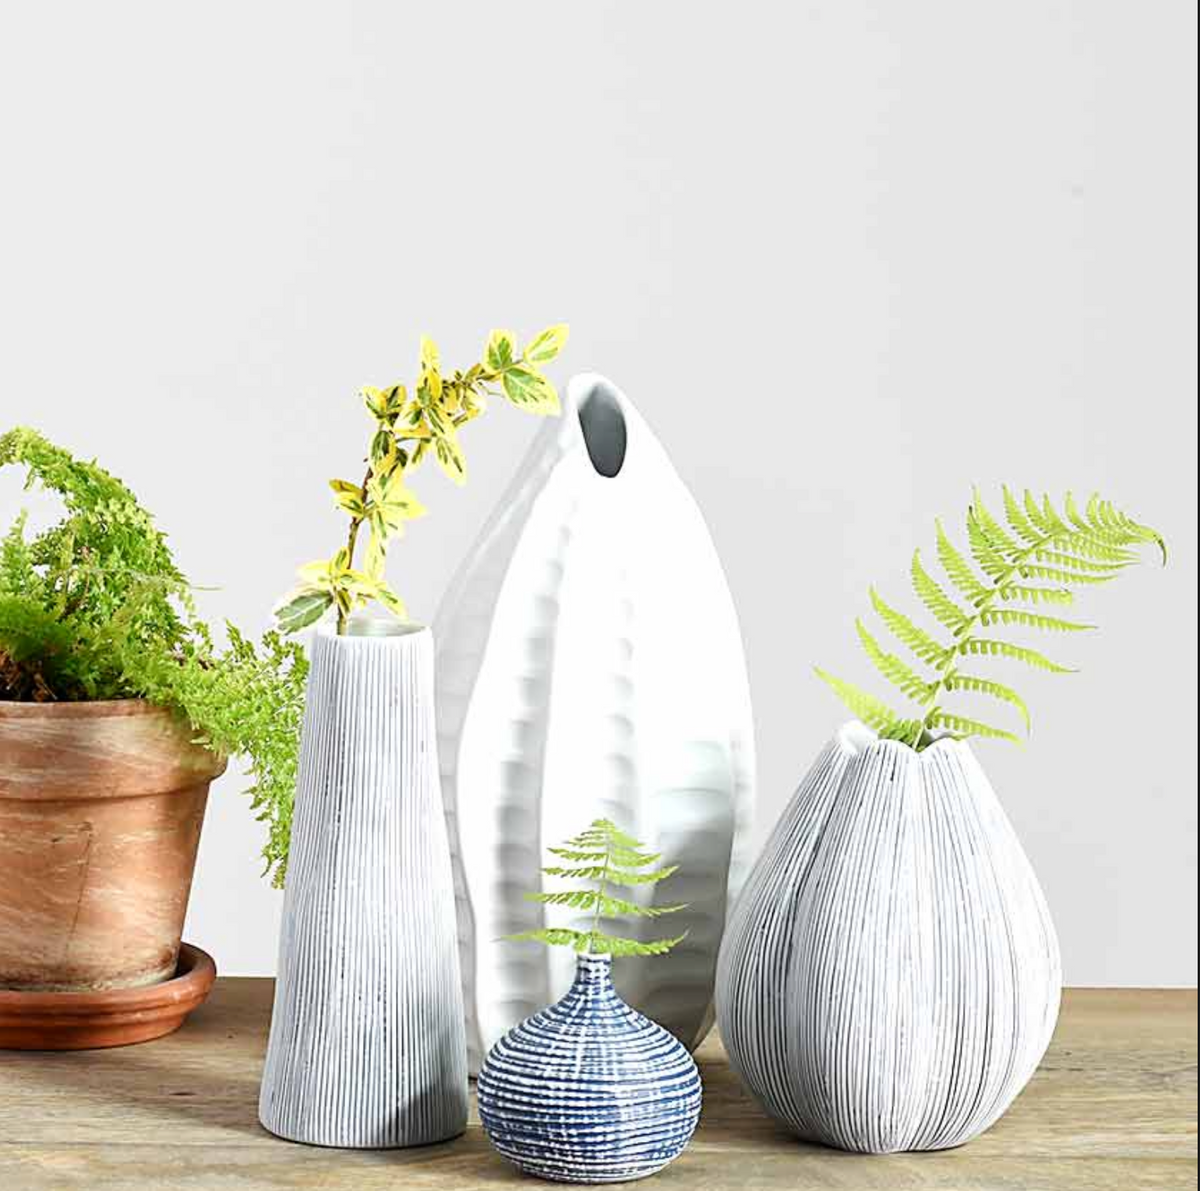 Tulip Porcelain Vase- Short